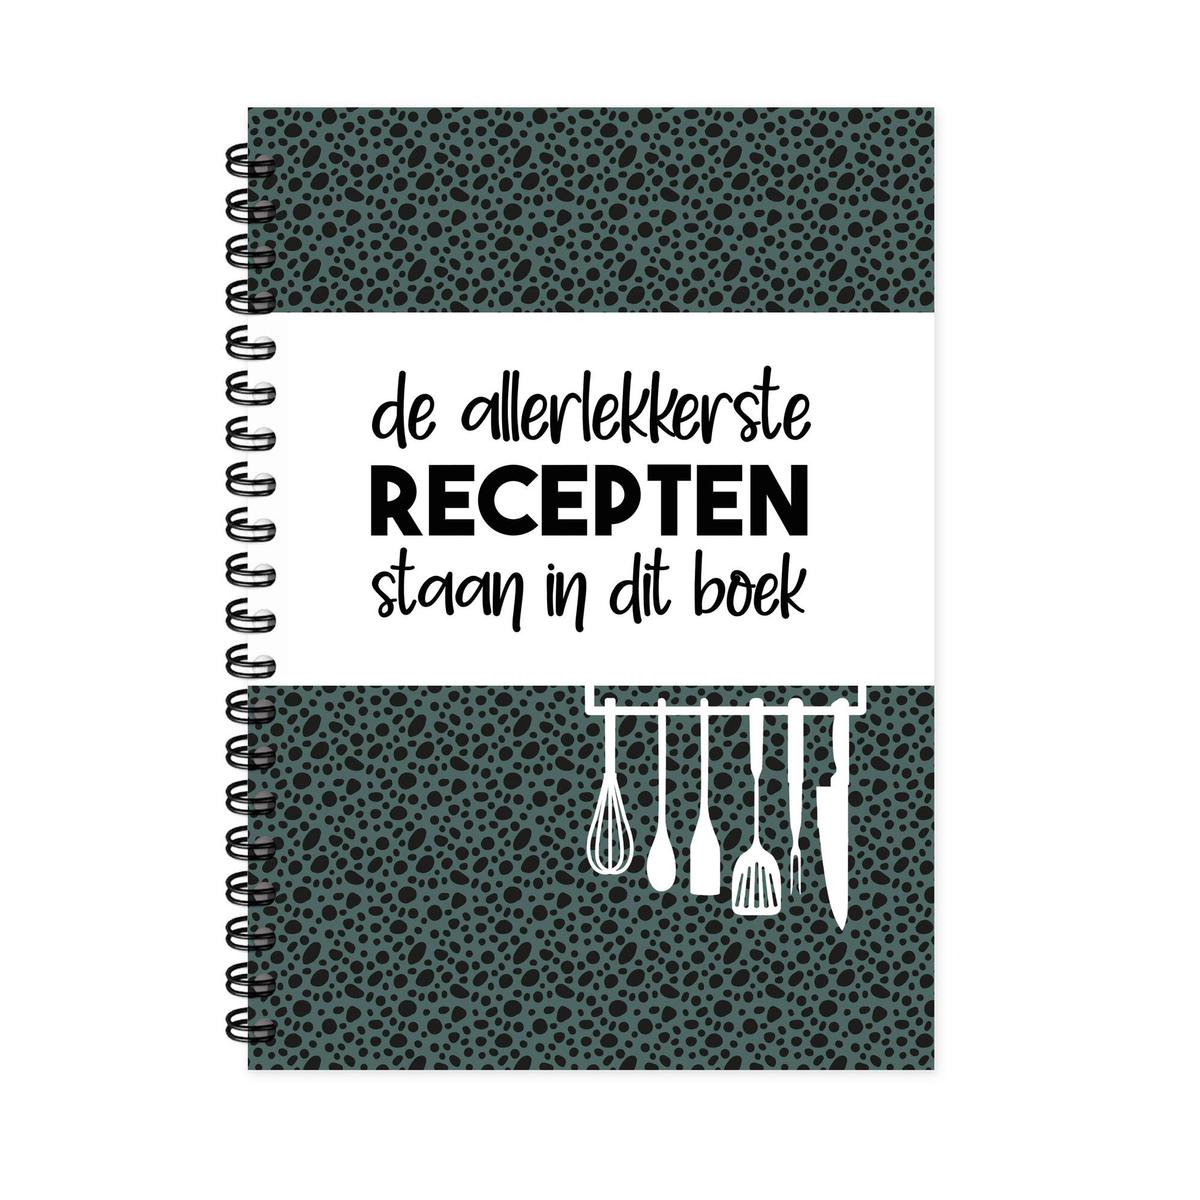 Receptenboek invulboek - Recepten verzamelboek met handige inhoudsopgave - verjaardagscadeau man vrouw - Tip - BBQ - barbecue